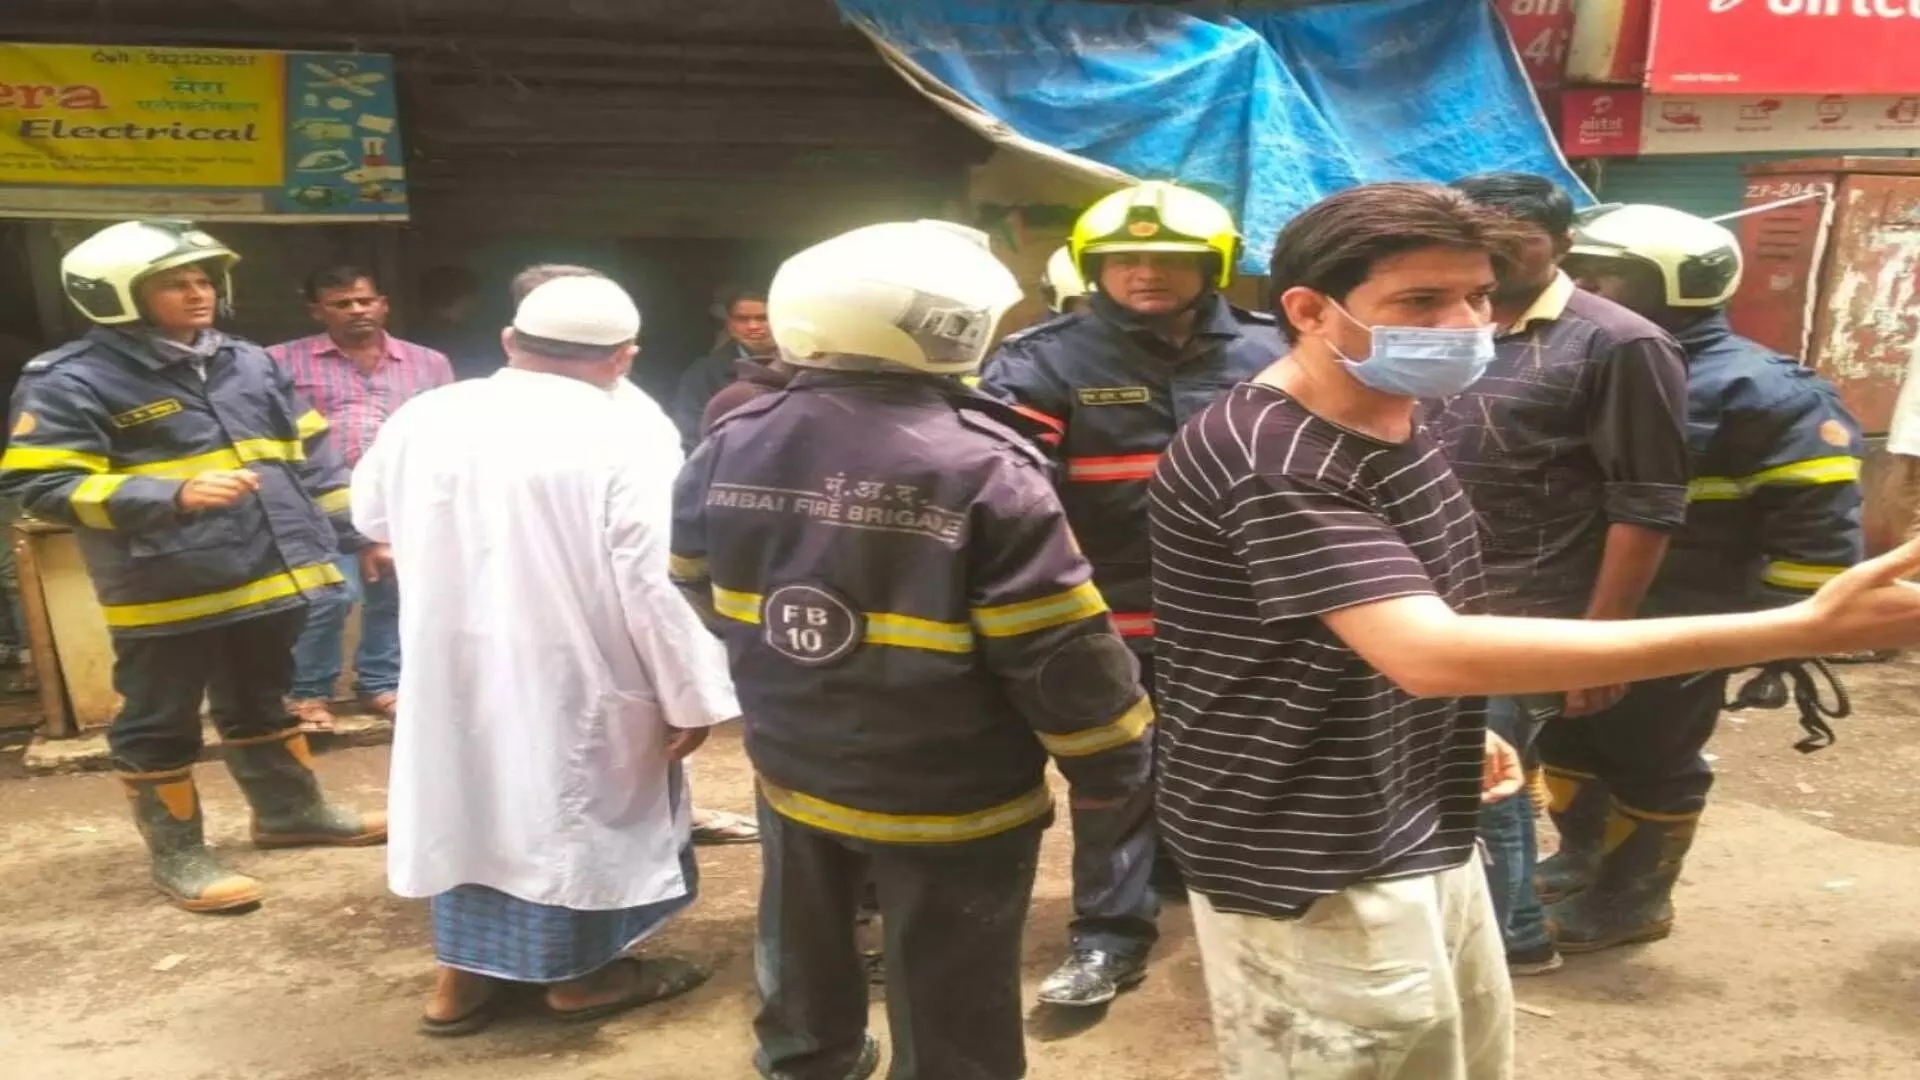 धारावीत गॅस सिलिंडरचा स्फोट ;14 जण होरपळले